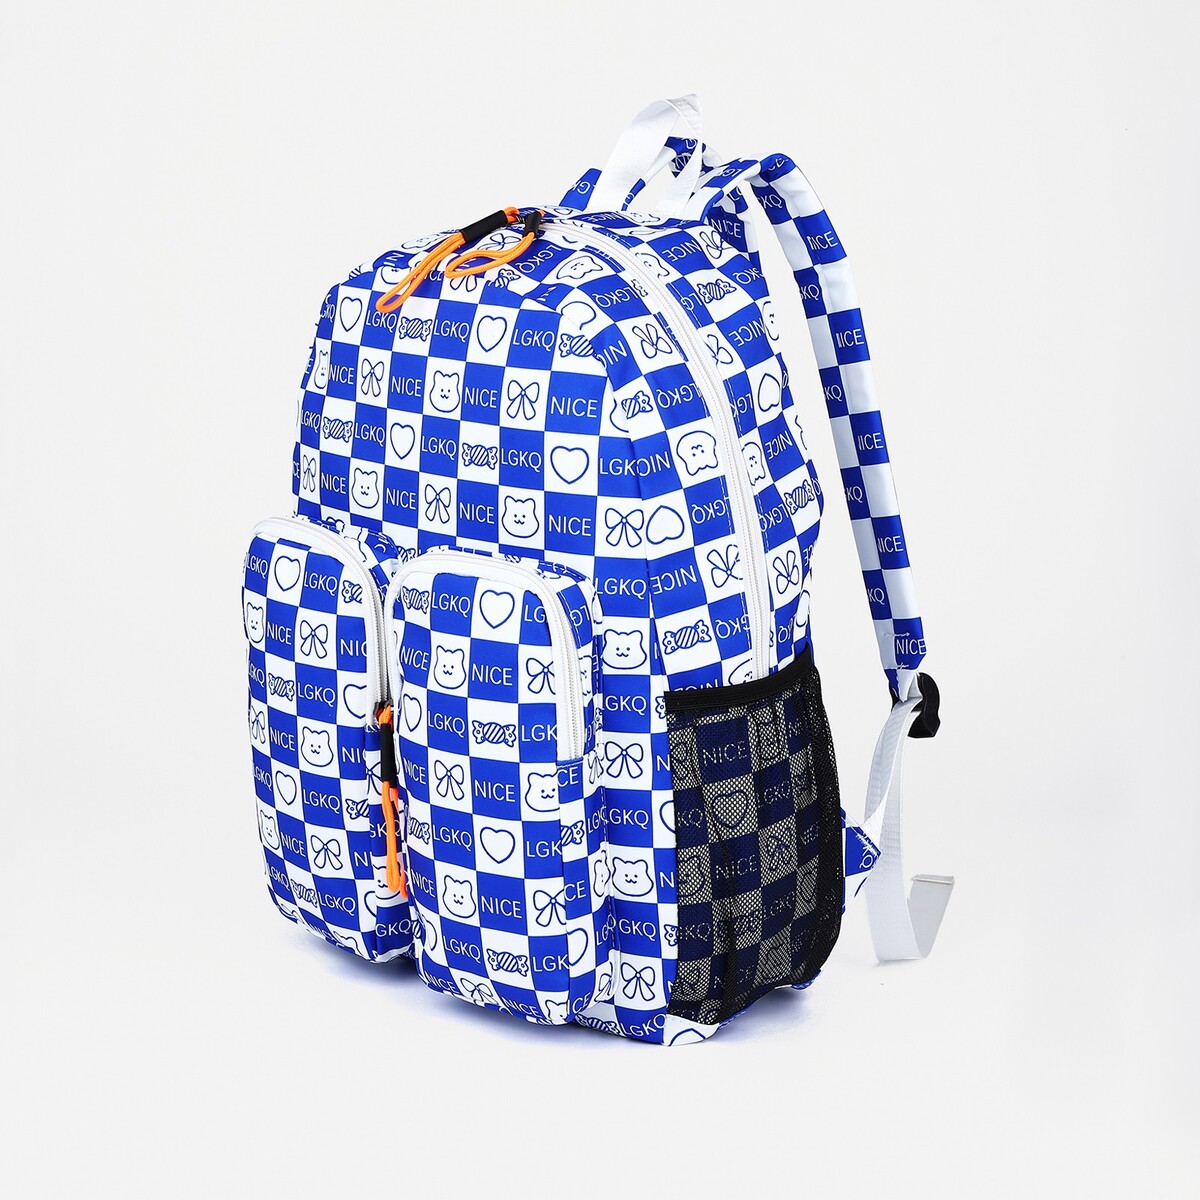 Рюкзак школьный из текстиля на молнии, 5 карманов, цвет синий рюкзак на молнии 5 наружных карманов пенал синий